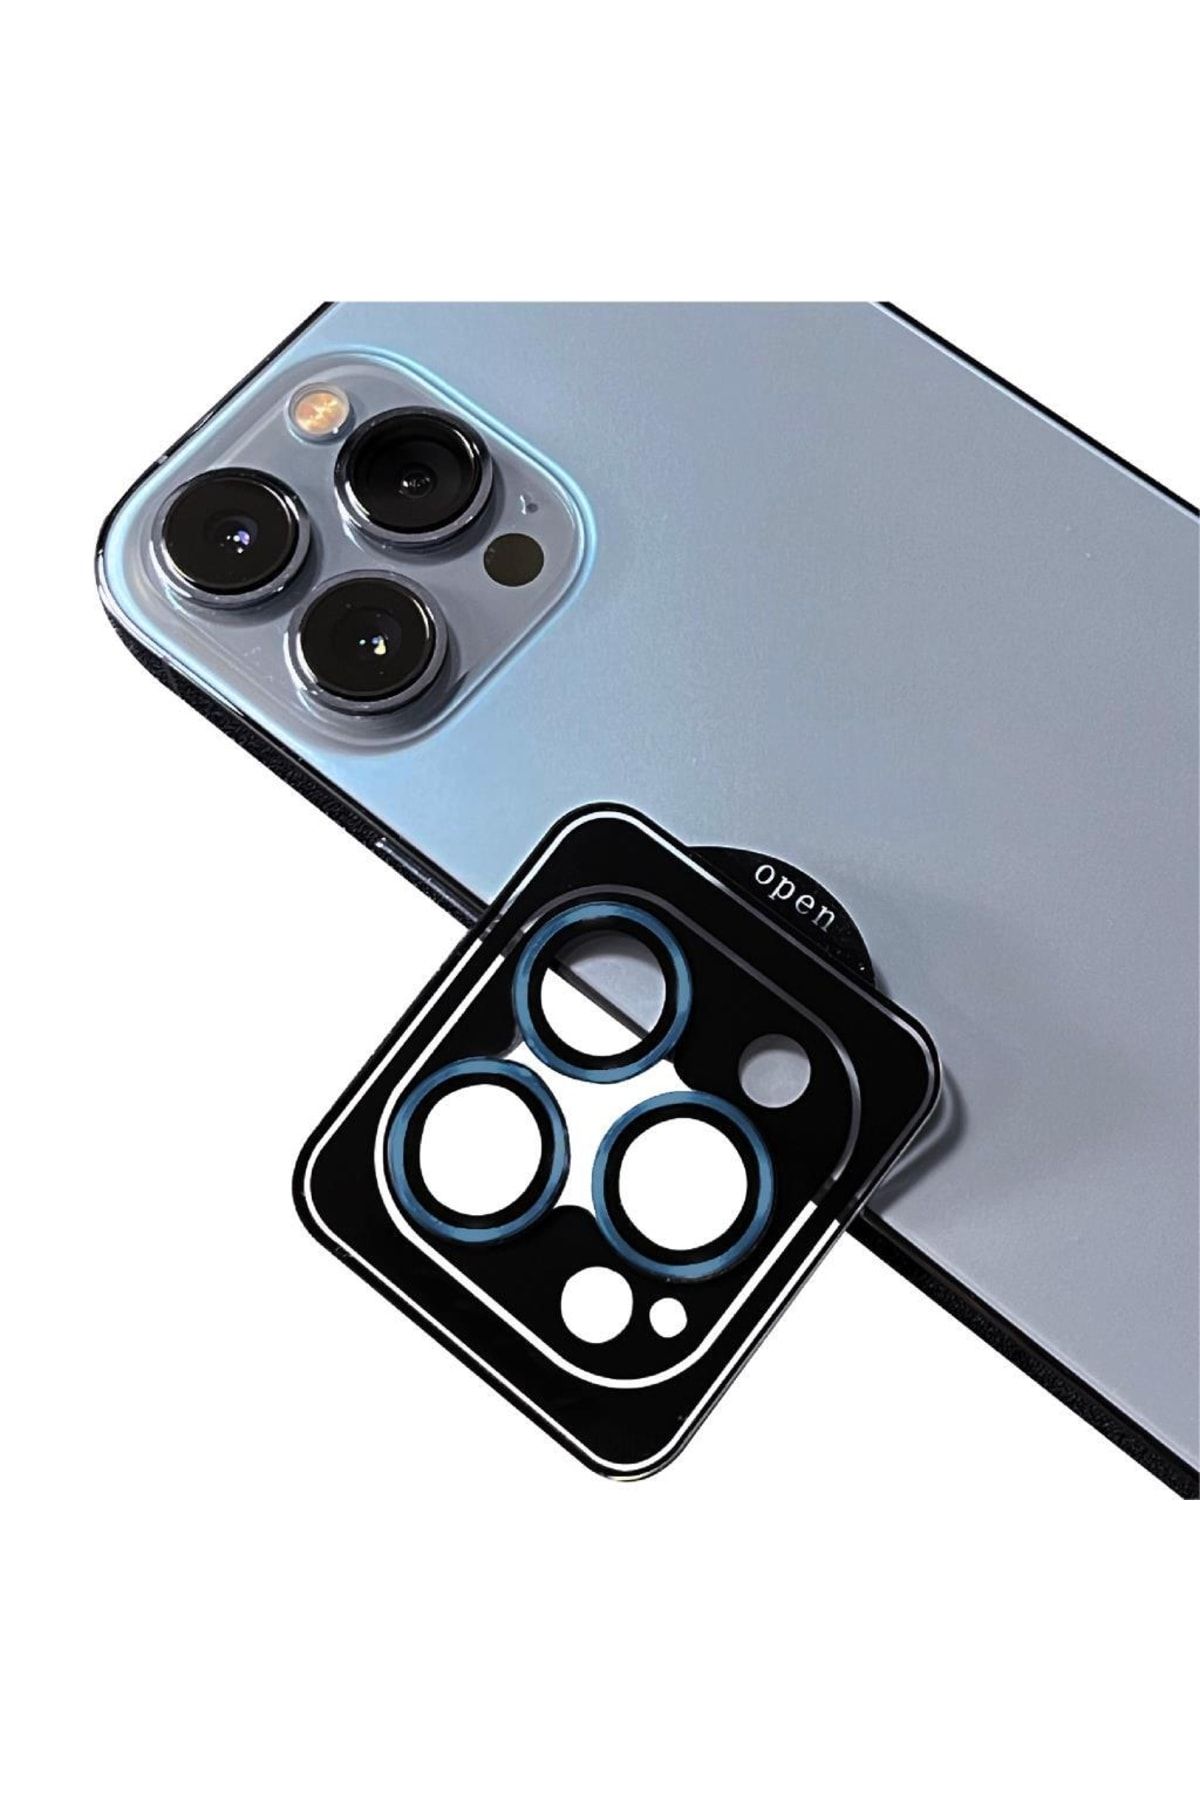 UnDePlus Apple Iphone 12 Pro Max Kamera Lens Koruyucu Kolay Uygulanabilir Cl-09